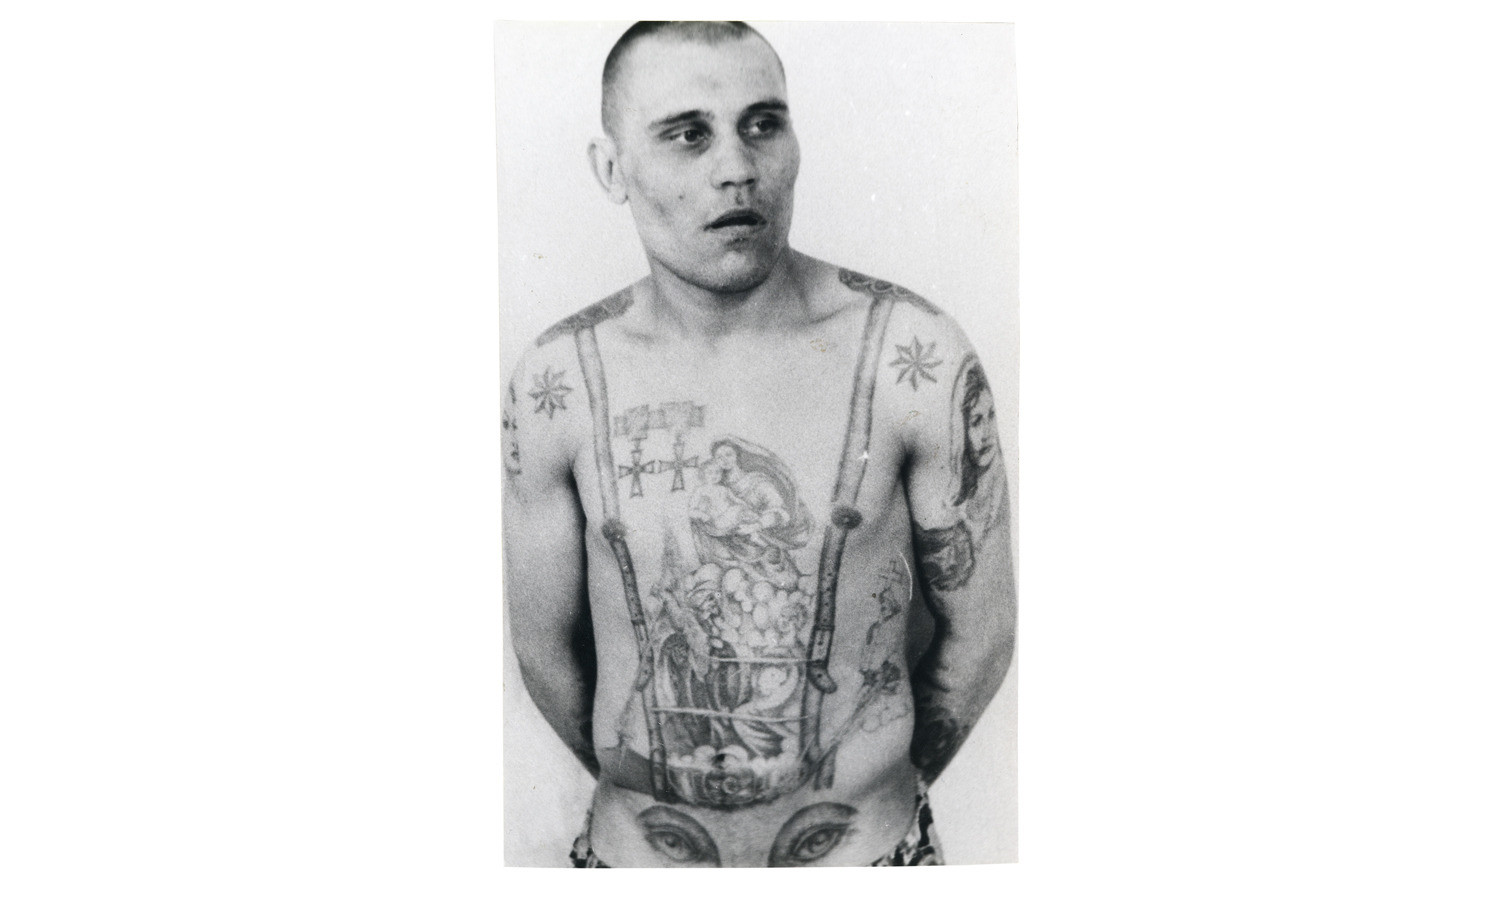 Звёзды на плечах этого заключенного, указывают, что он является «криминальным авторитетом», а медали служат знаком неповиновения с советским режимом. Глаза на животе указывают на гомосексуальность их обладателя (пенис становится «носом» на изображённом лице).